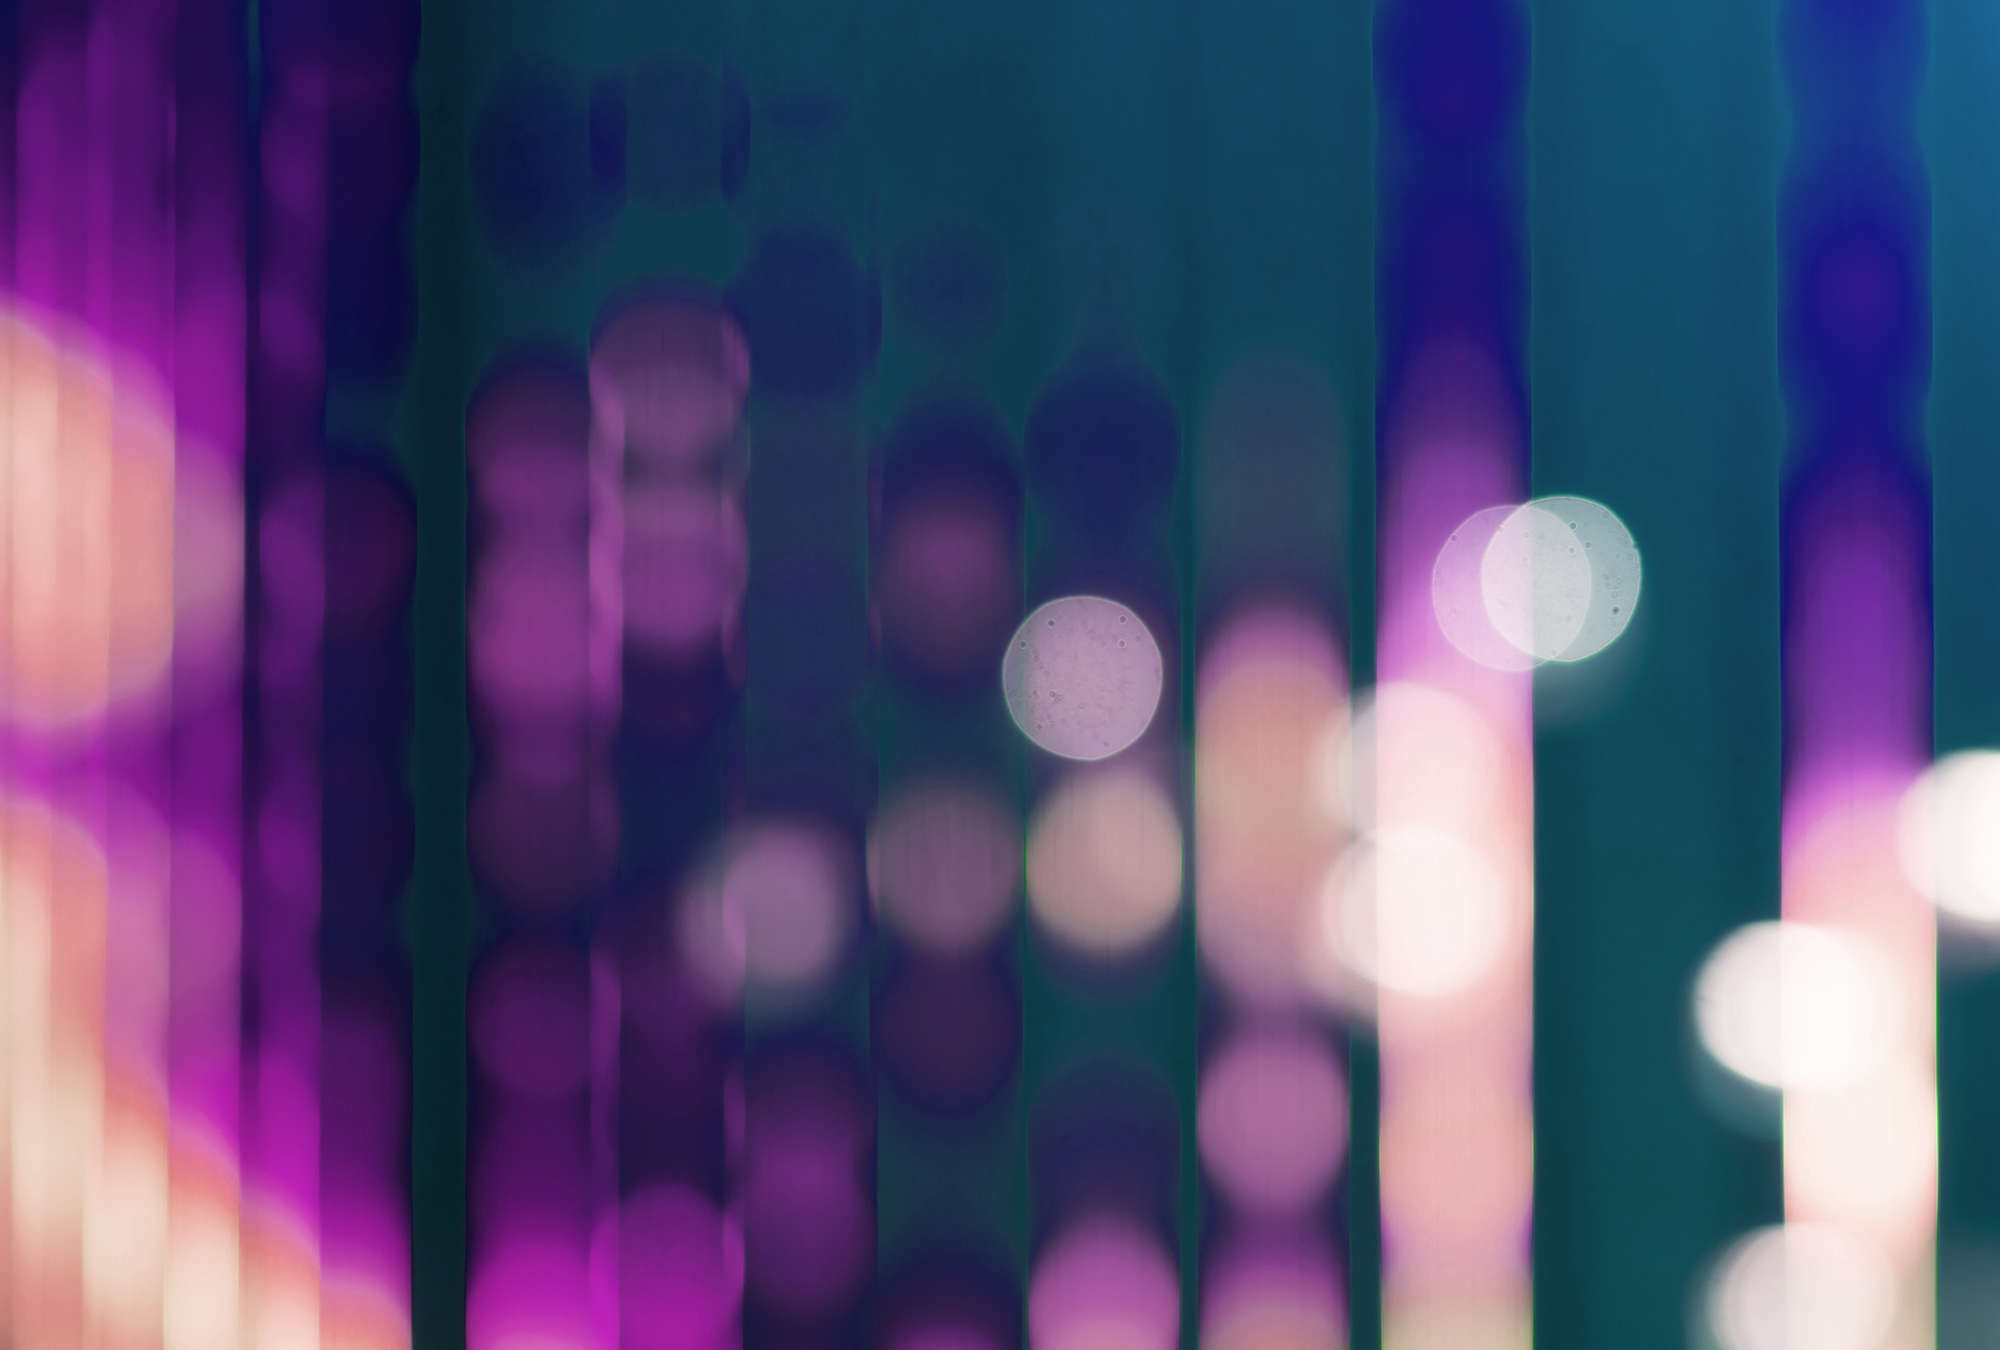             Big City Lights 3 - Fototapete mit Lichtreflexe in Violett – Blau, Violett | Struktur Vlies
        